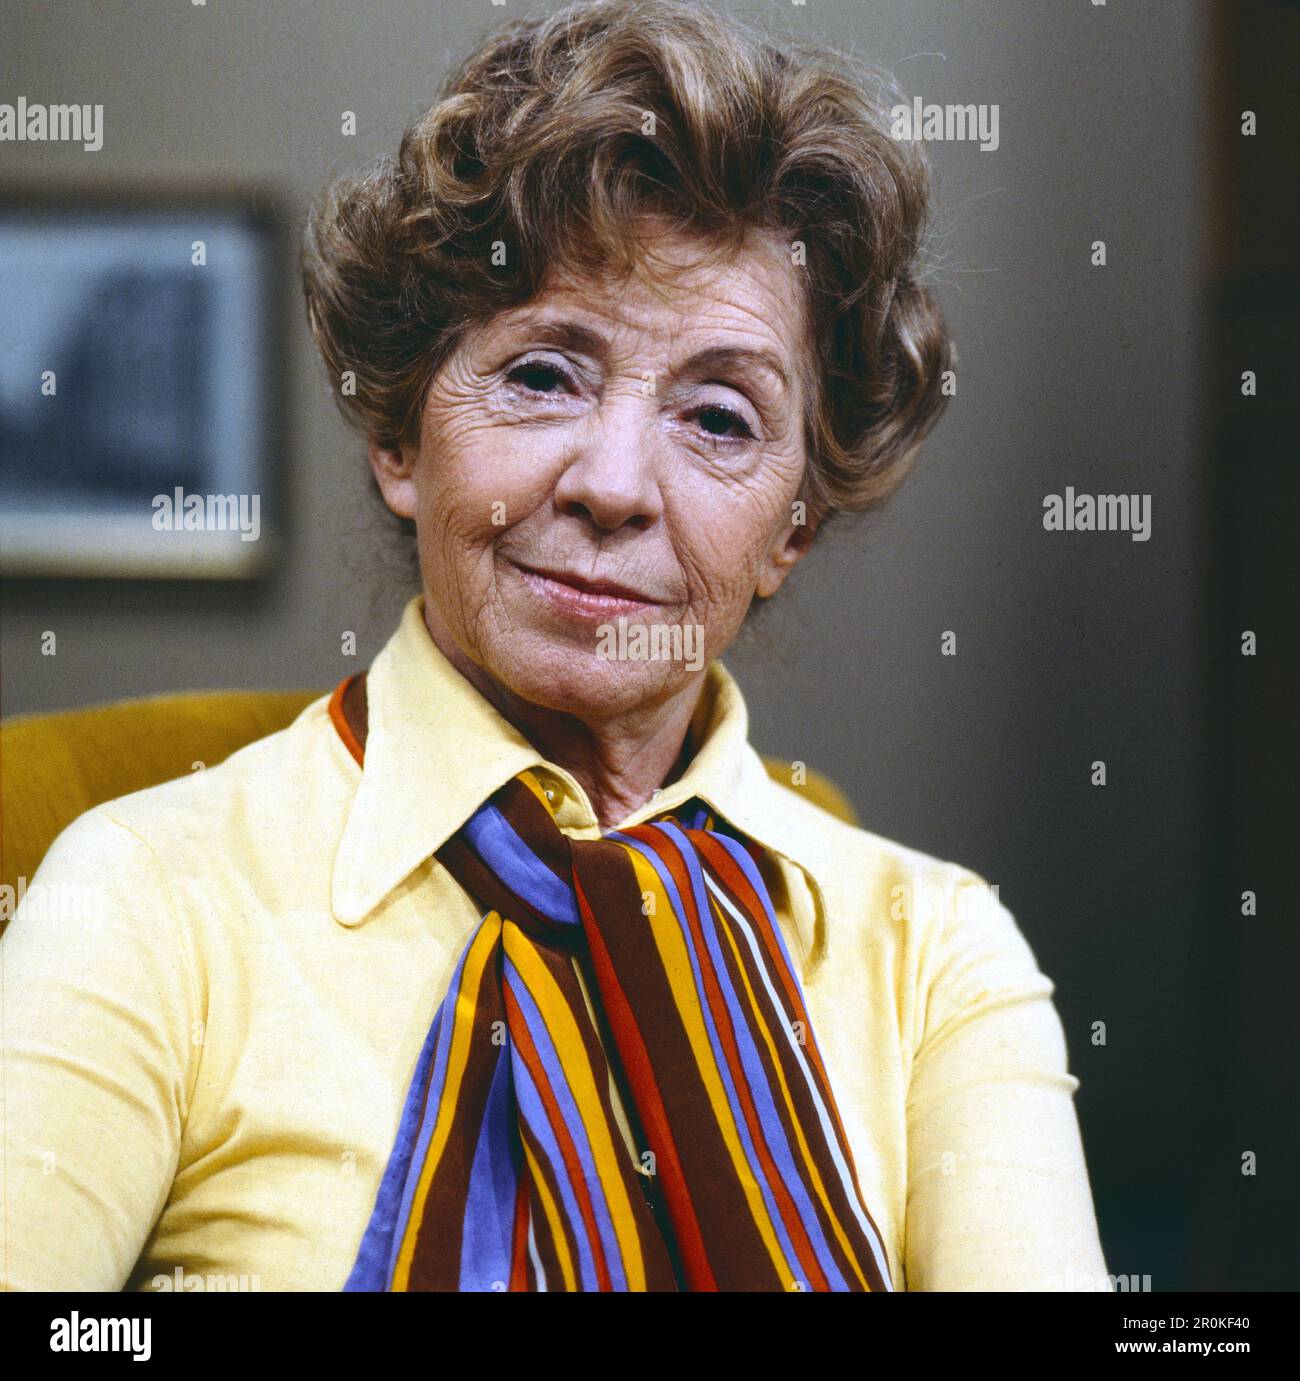 Inge Meysel, deutsche Schauspielerin, Theater- und TV-Darstellerin, Portrait, circa 1986, Deutschland. Inge Meysel, German TV and Theatre actress, portrait, Germany, circa 1986. Stock Photo